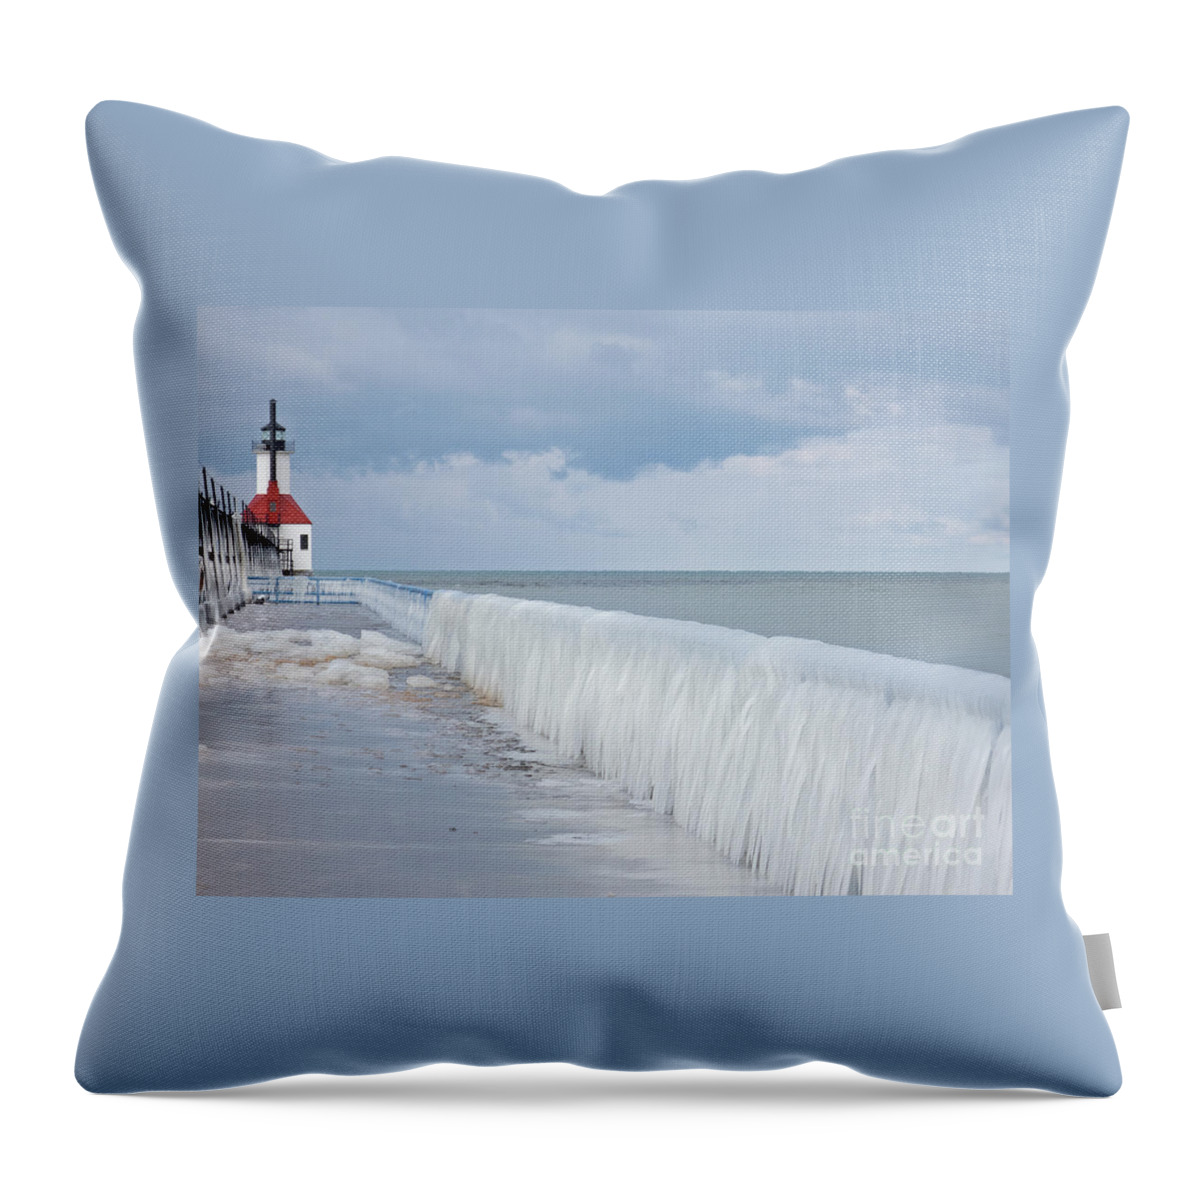 Lighthouse Throw Pillow featuring the photograph Frozen Splash by Ann Horn